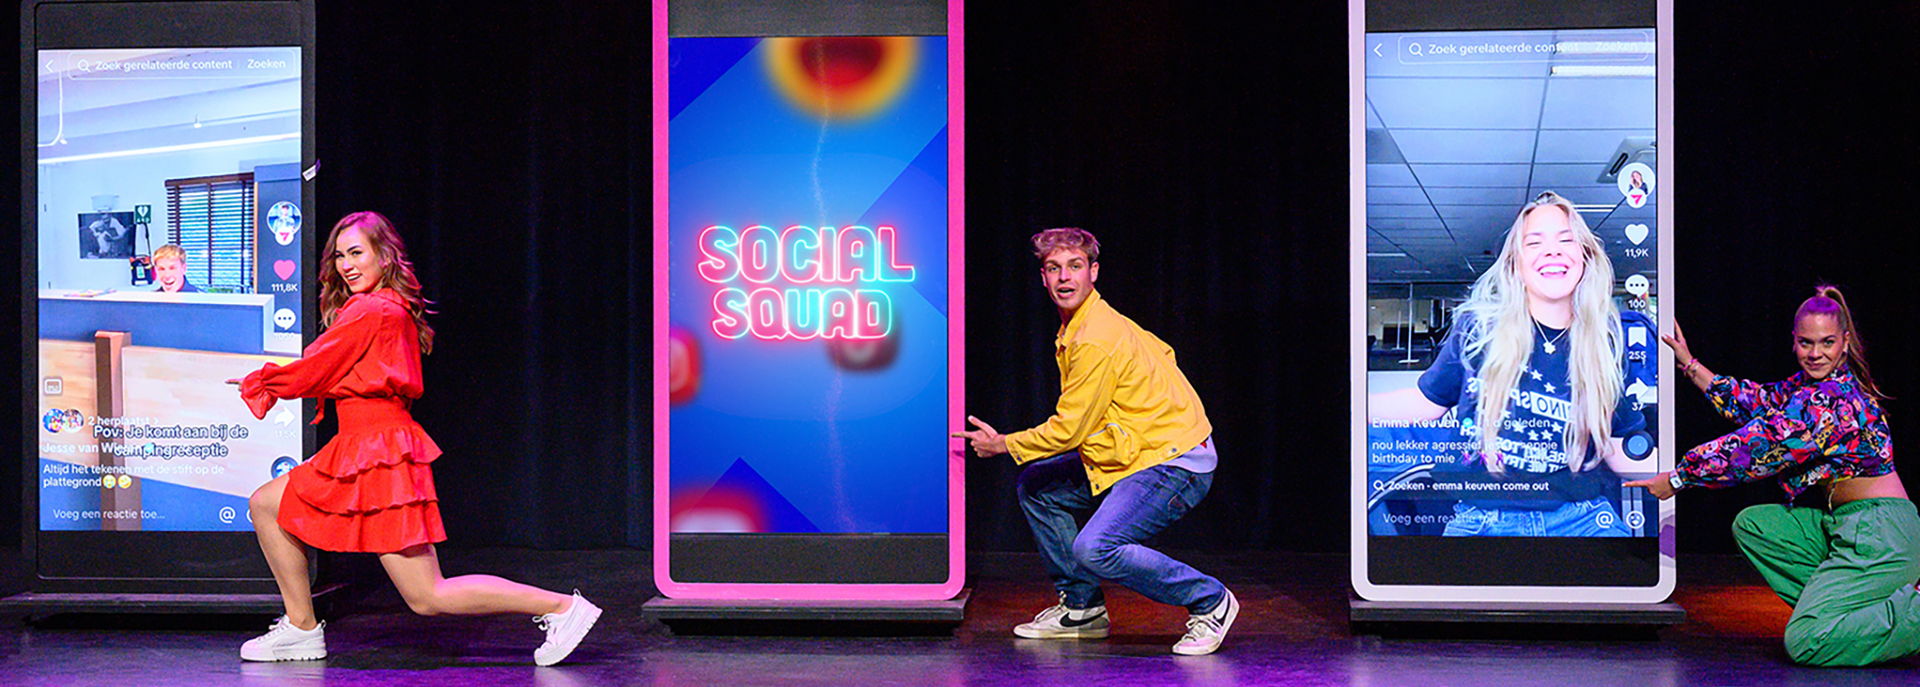 Social Squad slide - 2024 - Fotografie Annemieke van der Togt